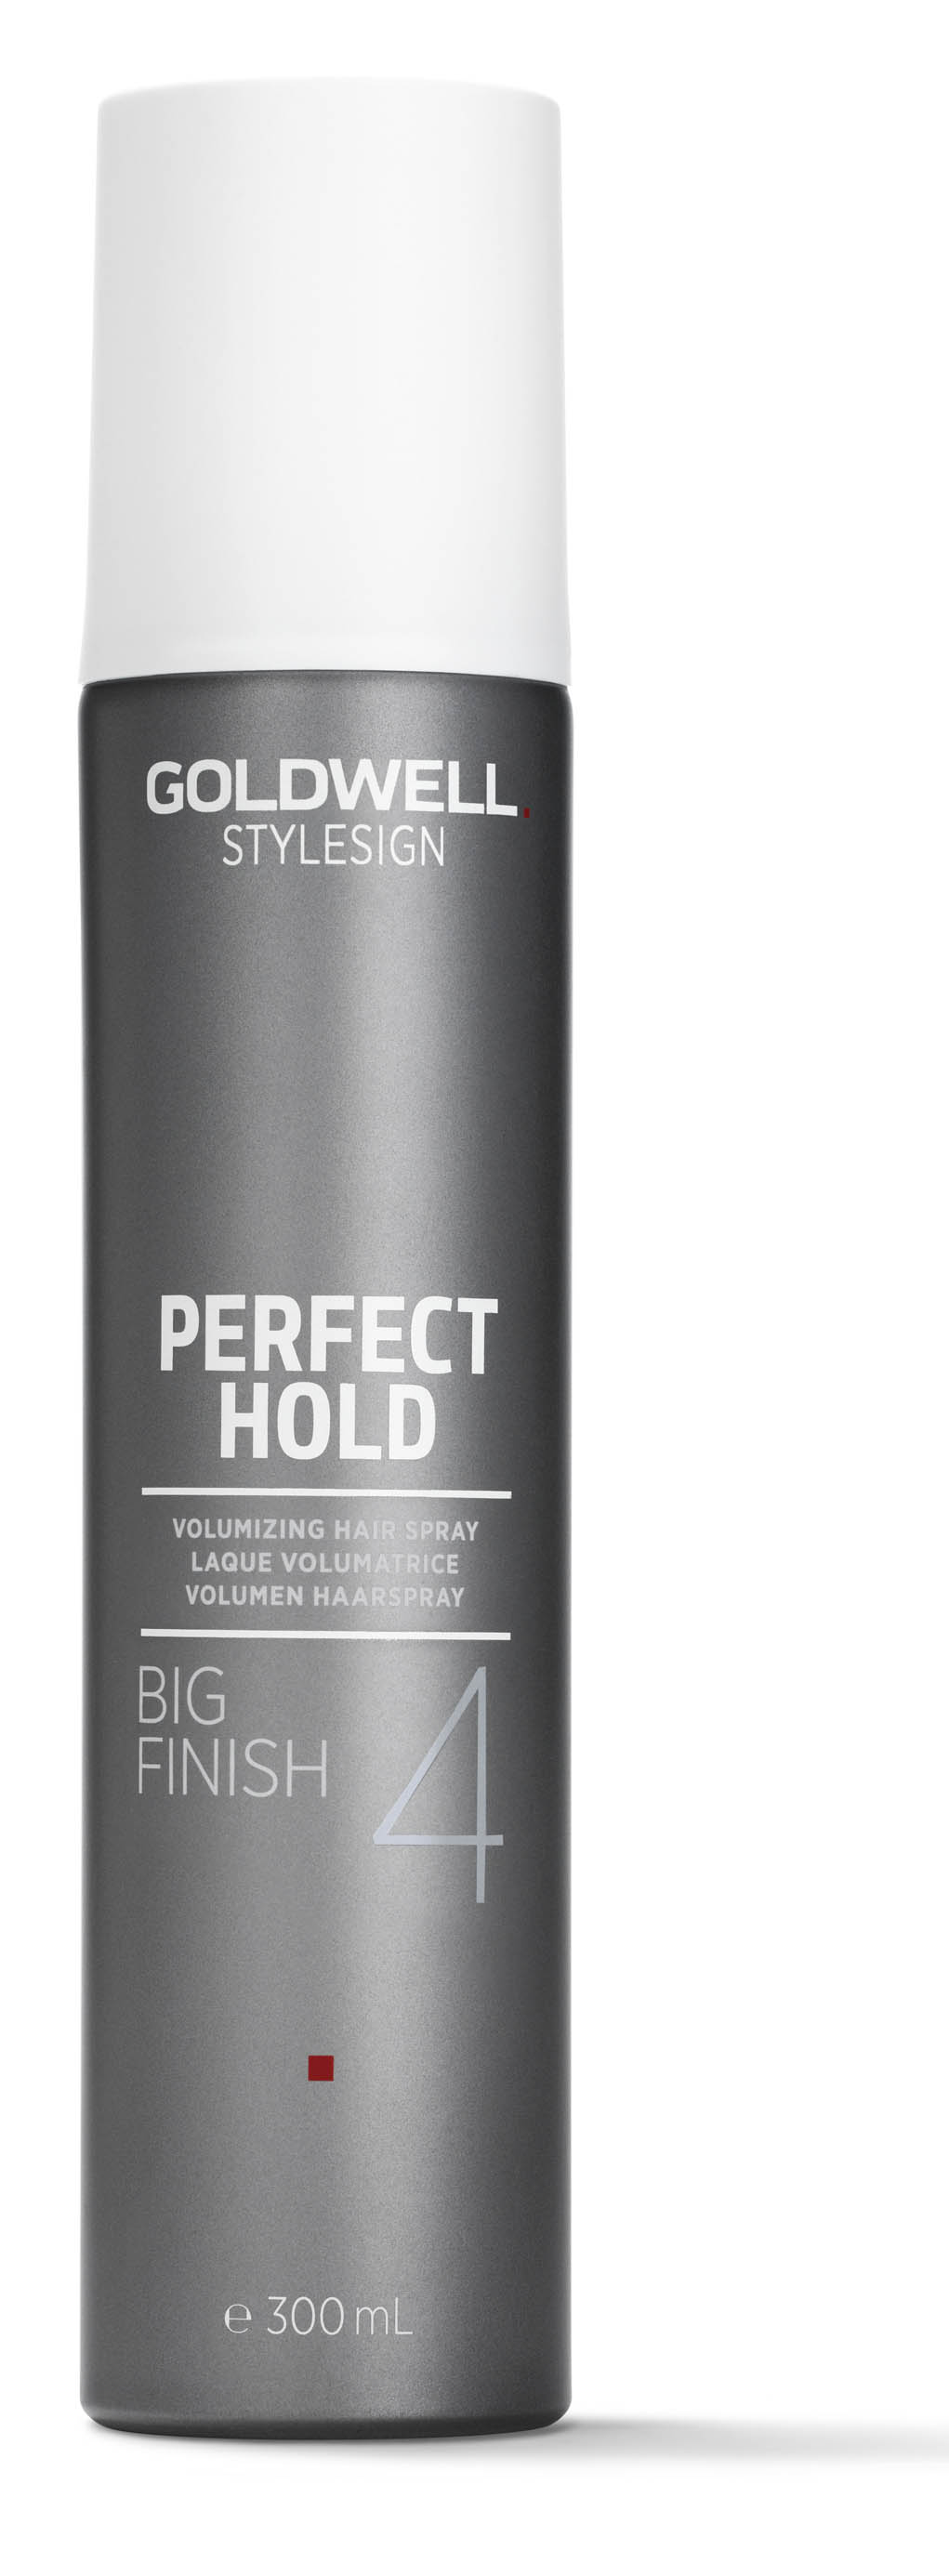 Stylesign BIG FINISH, Volumen Haarspray